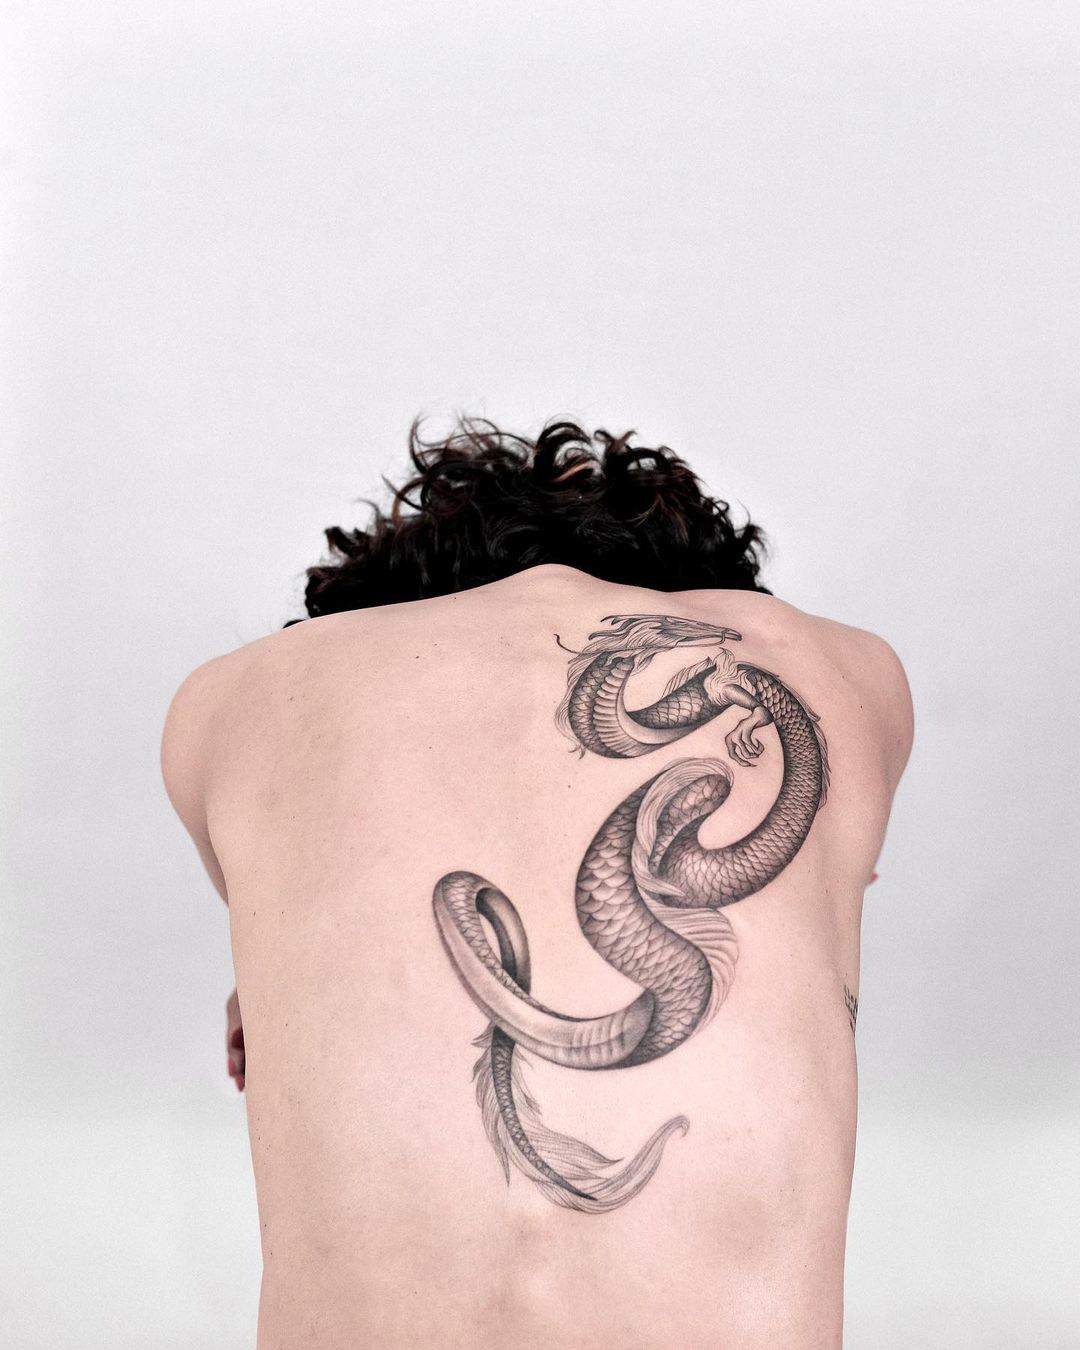 Tatuaje de dragón en la espalda, de Pedro García.